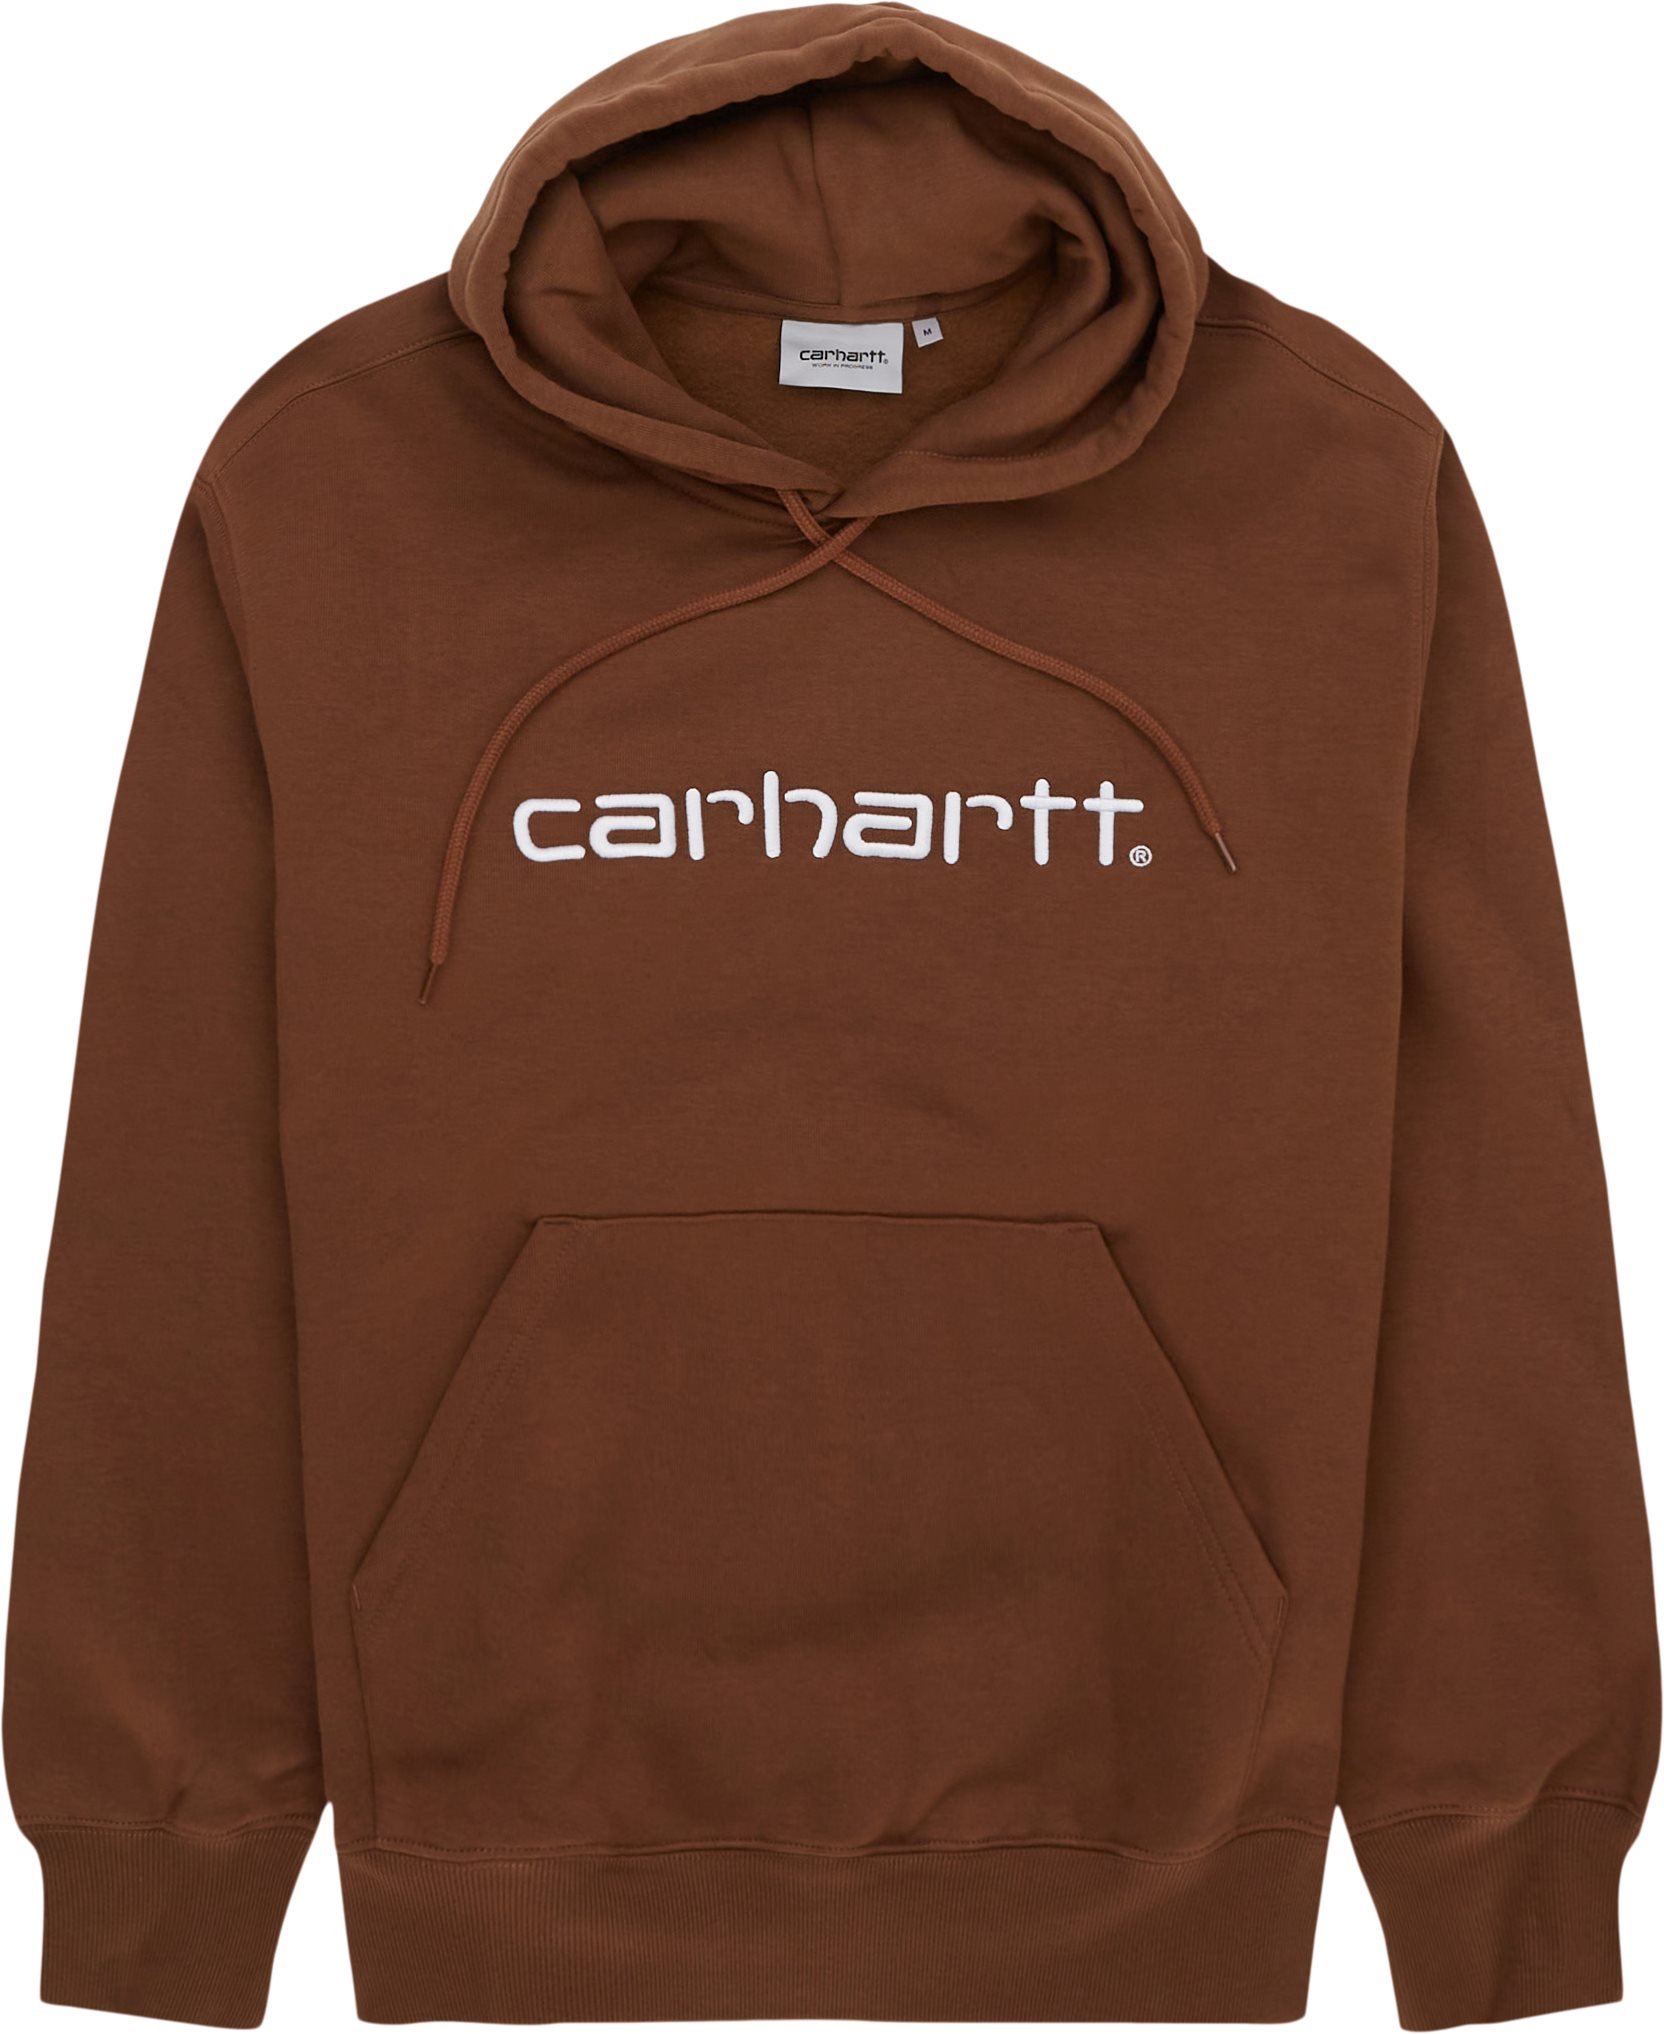 HOODED CARHARTT SWEATSHIRT I030230 Sweatshirts TAMARIND Carhartt WIP 825 DKK